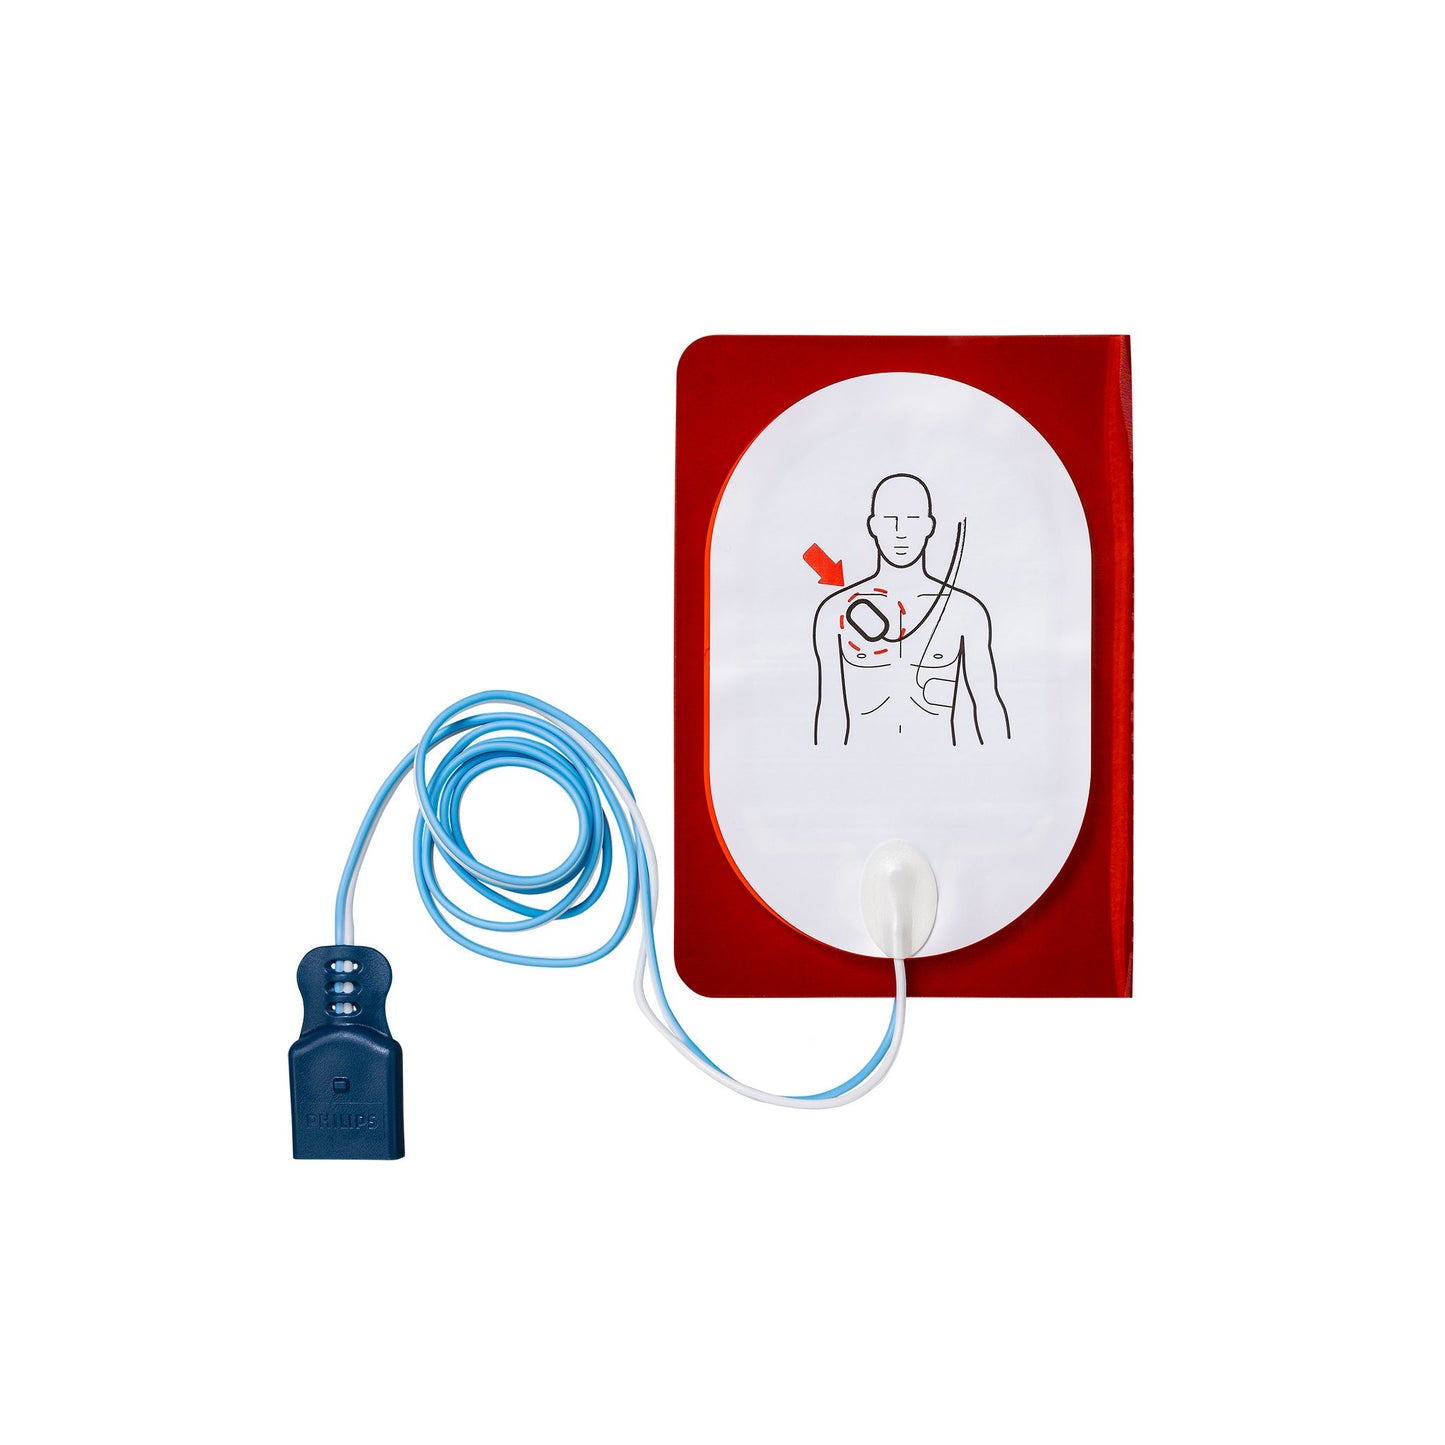 Philips AED-Zubehör: FR2-Elektroden